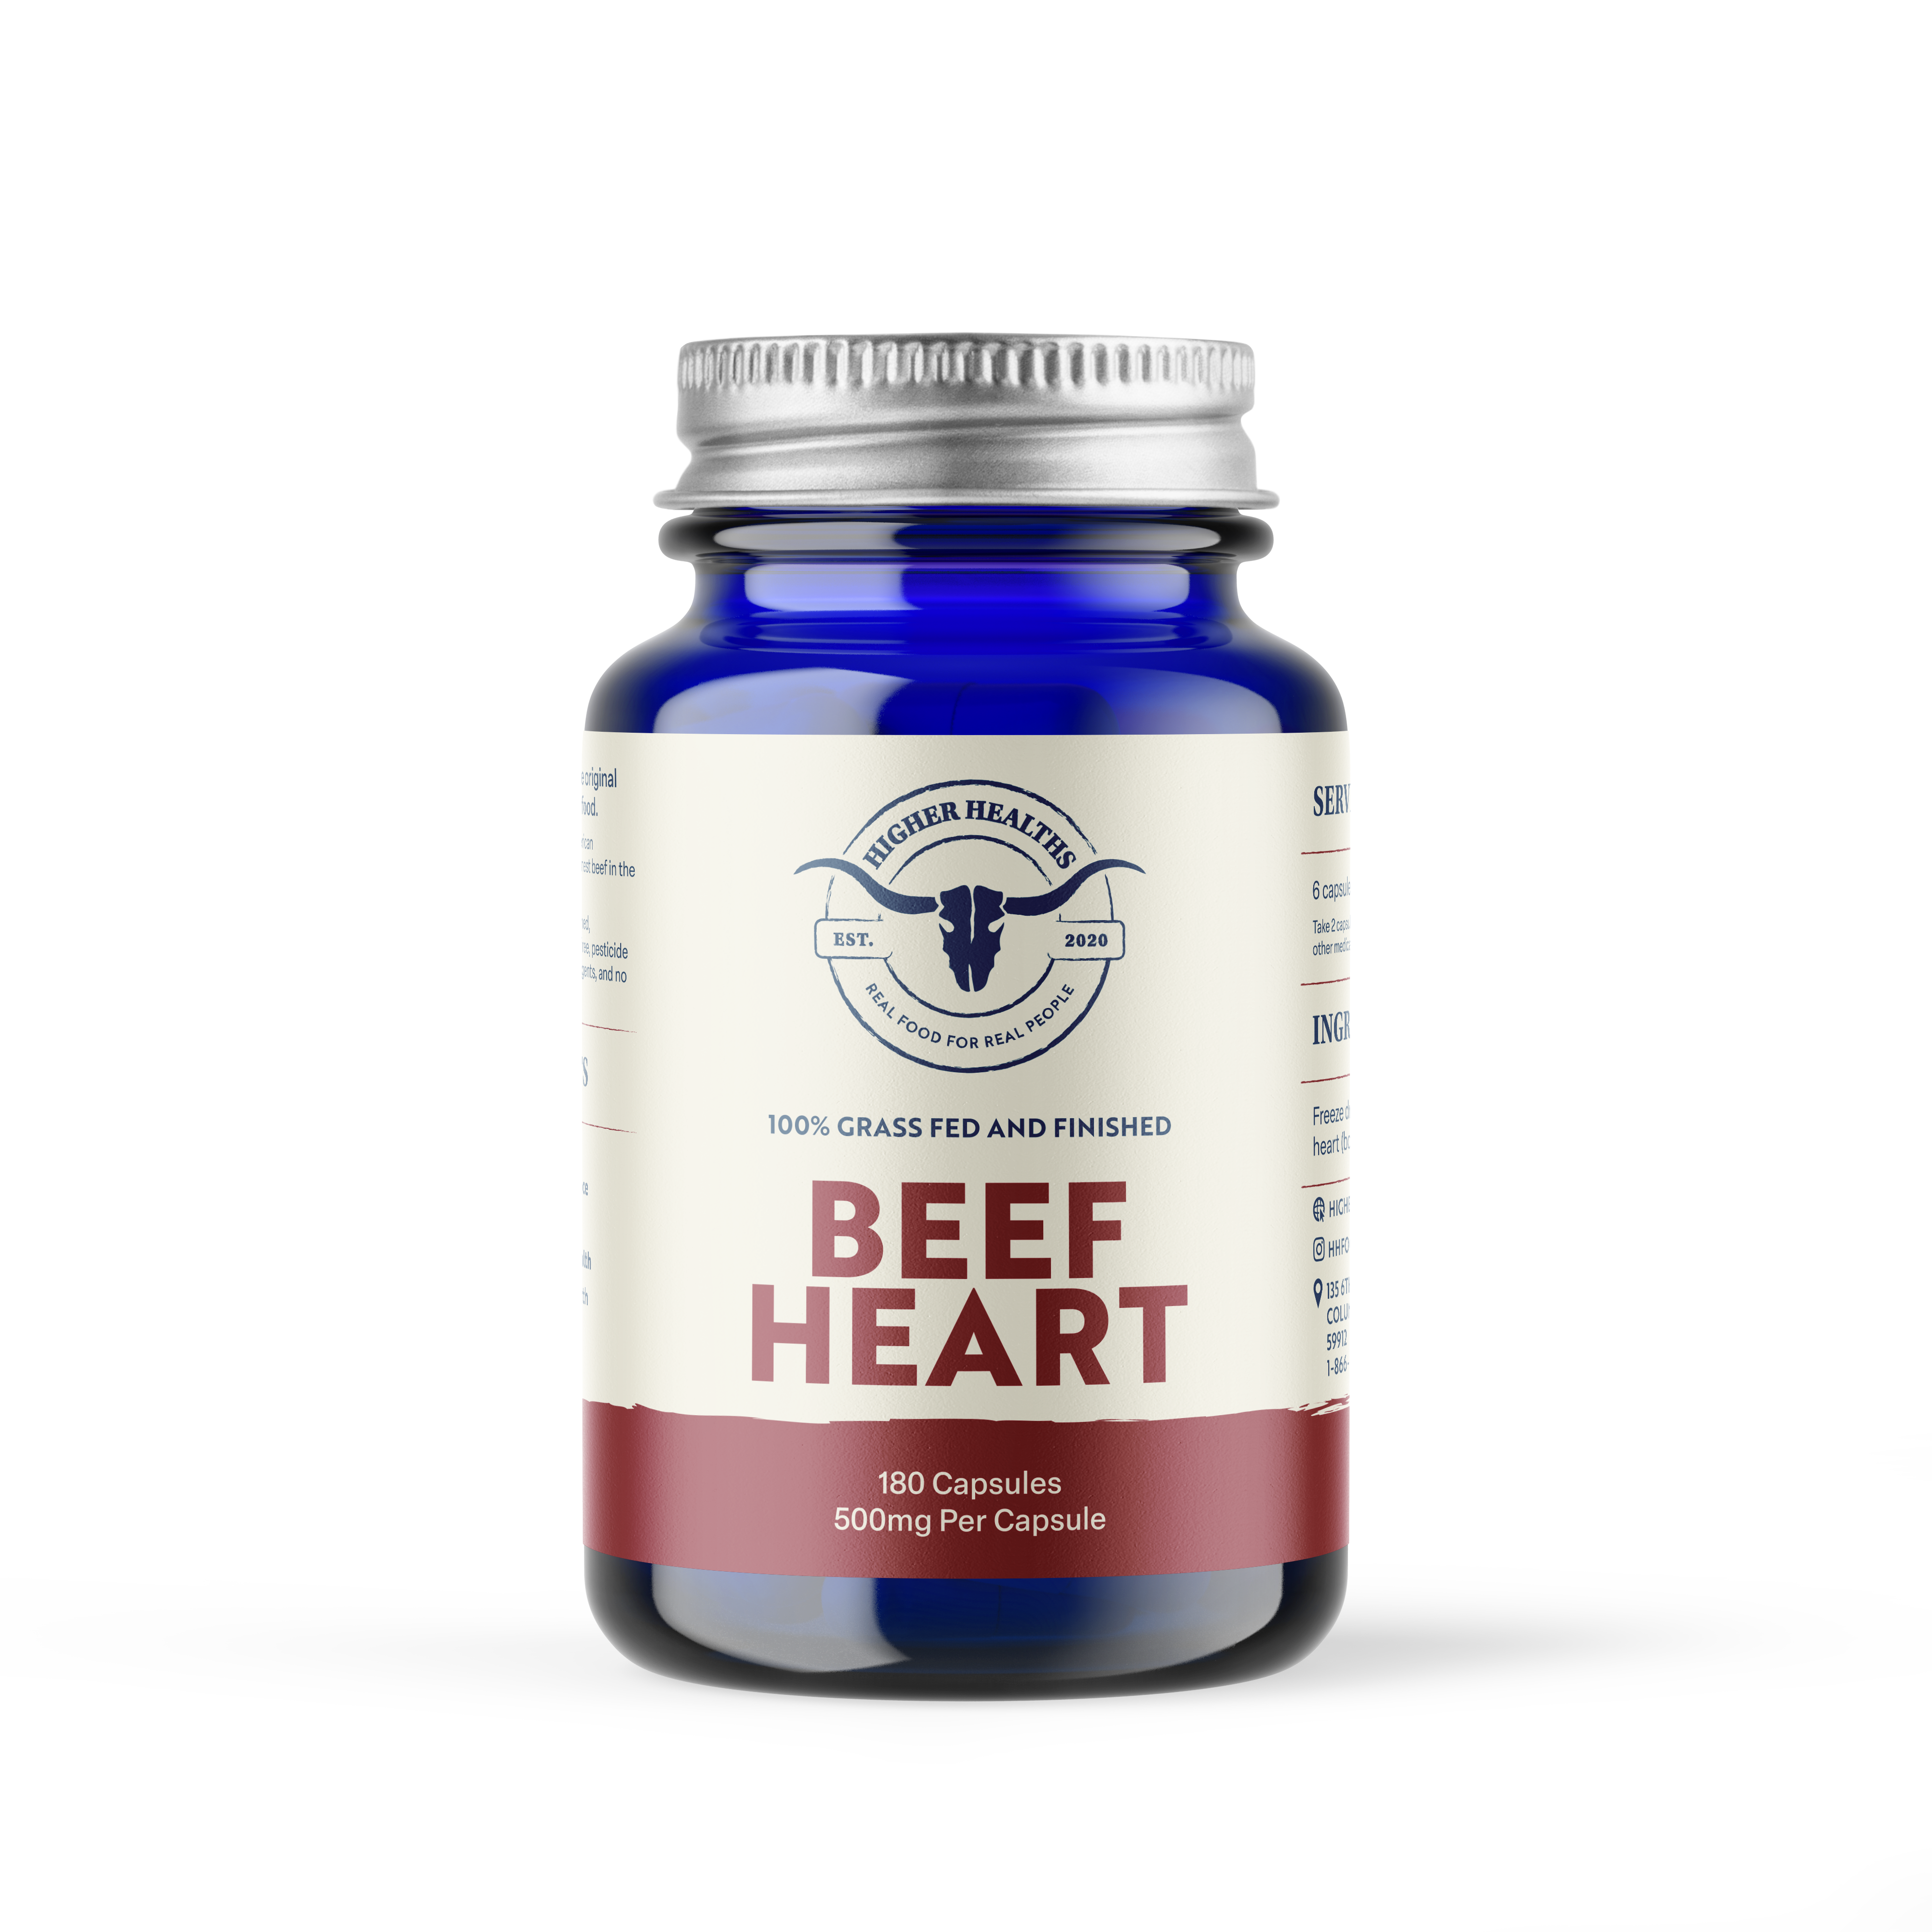 2 PACK - Beef Heart - Antioxidant Abundance